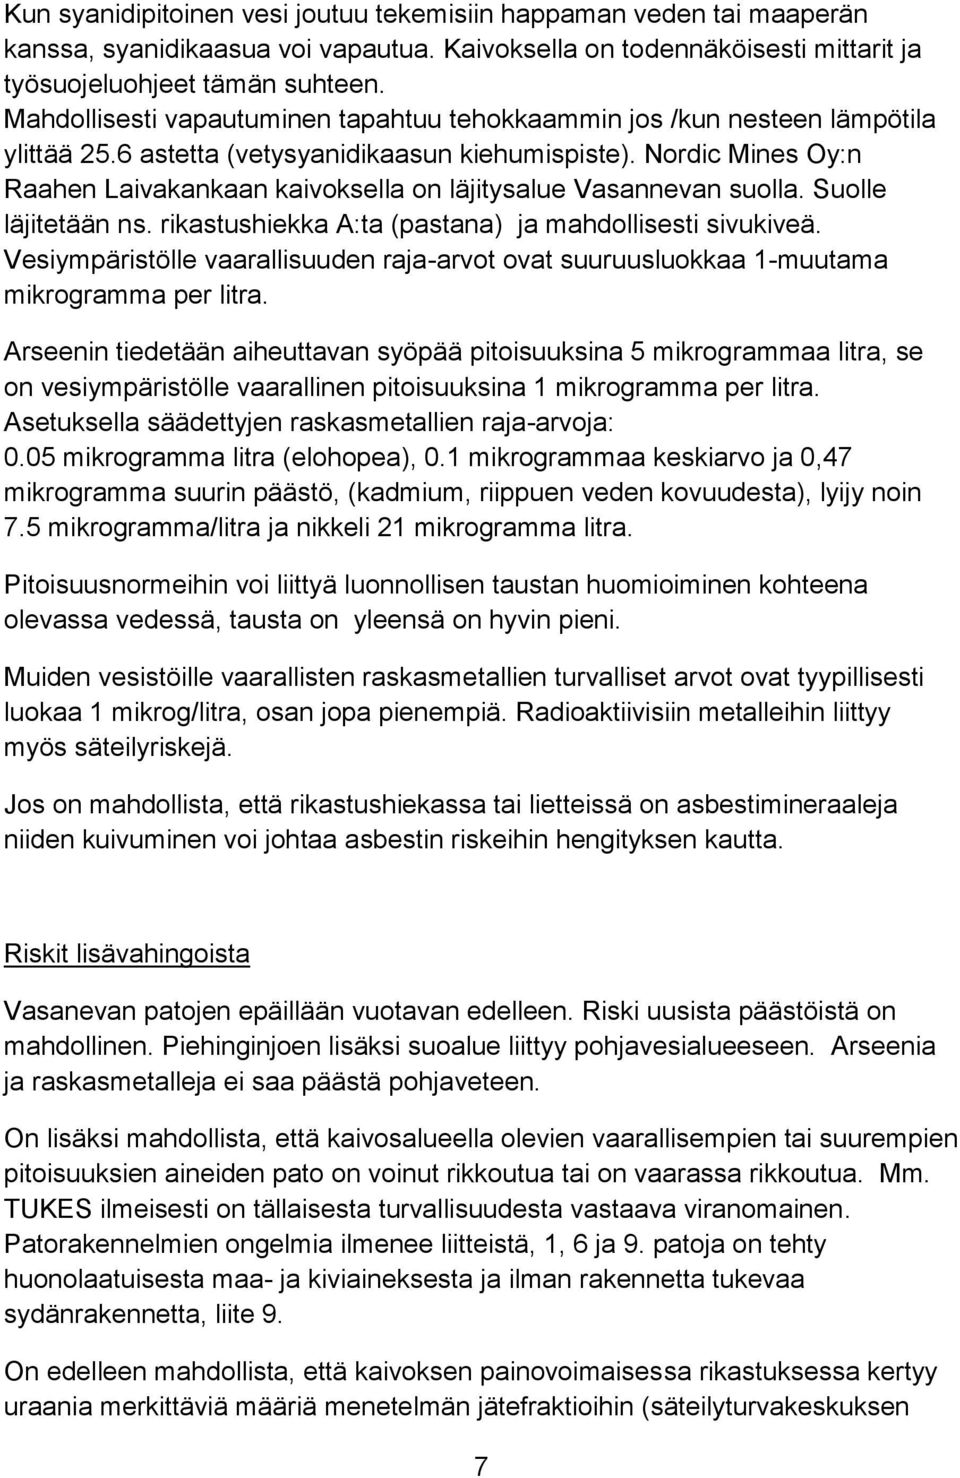 Nordic Mines Oy:n Raahen Laivakankaan kaivoksella on läjitysalue Vasannevan suolla. Suolle läjitetään ns. rikastushiekka A:ta (pastana) ja mahdollisesti sivukiveä.